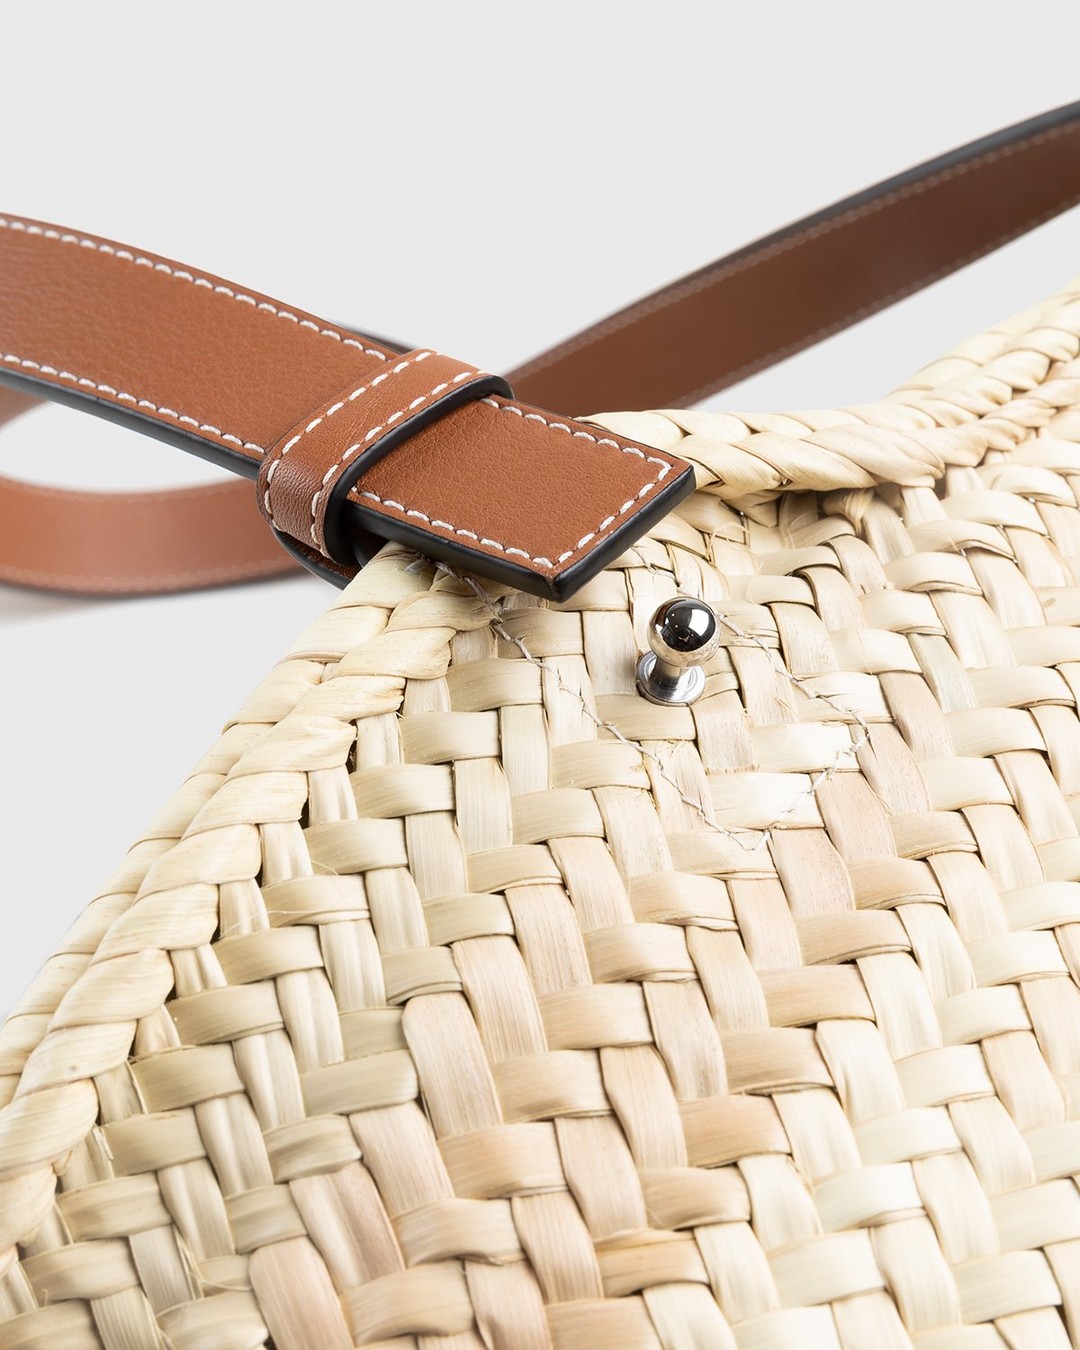 Loewe – Paula's Ibiza Basket Bag Natural/Tan - Shoulder Bags - Beige - Image 3